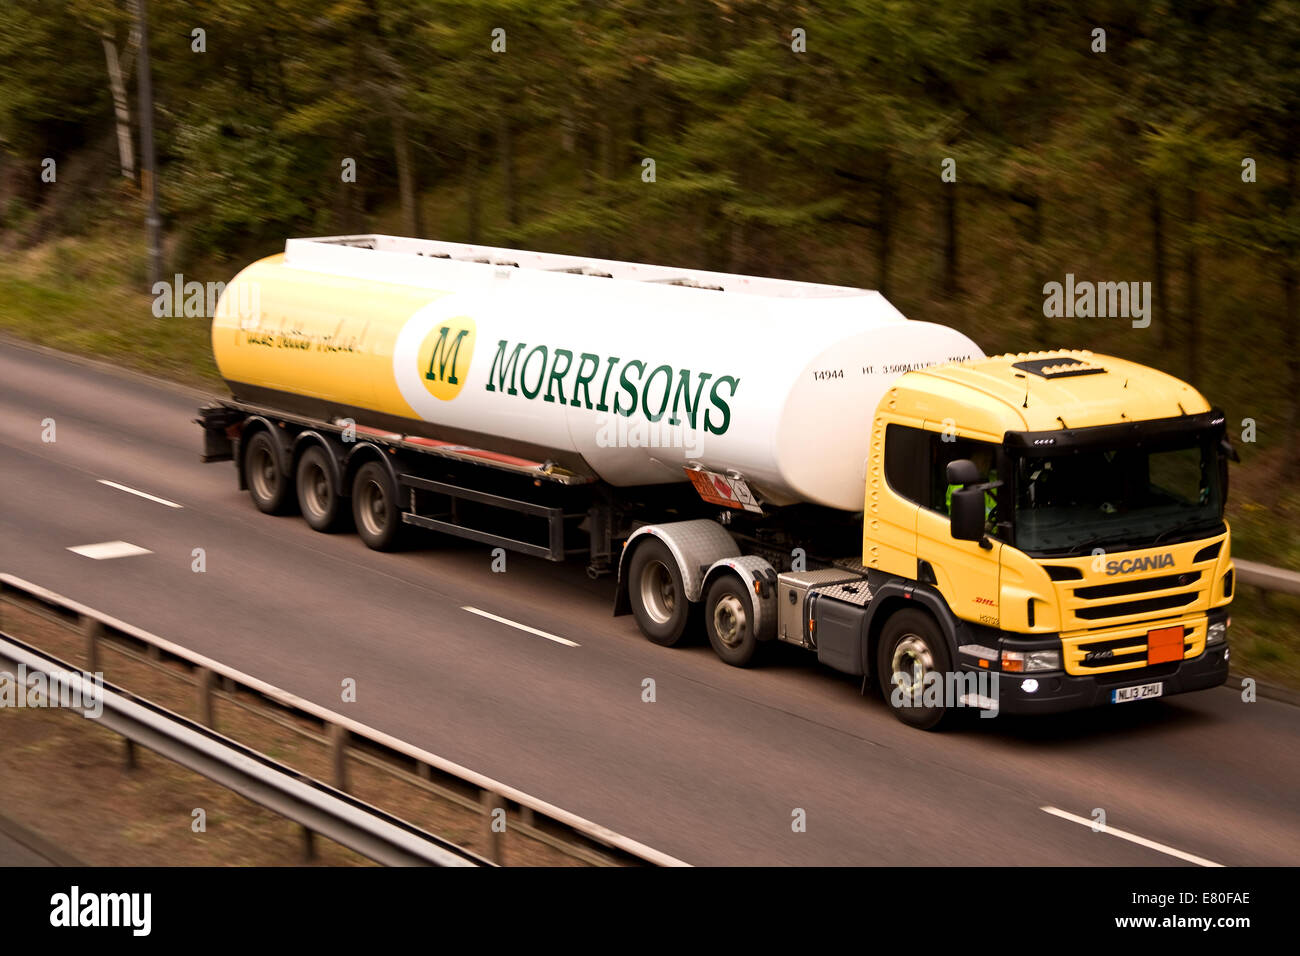 Panoramique avec synchro flash arrière d'un camion-citerne de carburant Morrisons de la Kingsway West chaussée double toboggan à Dundee, Royaume-Uni Banque D'Images